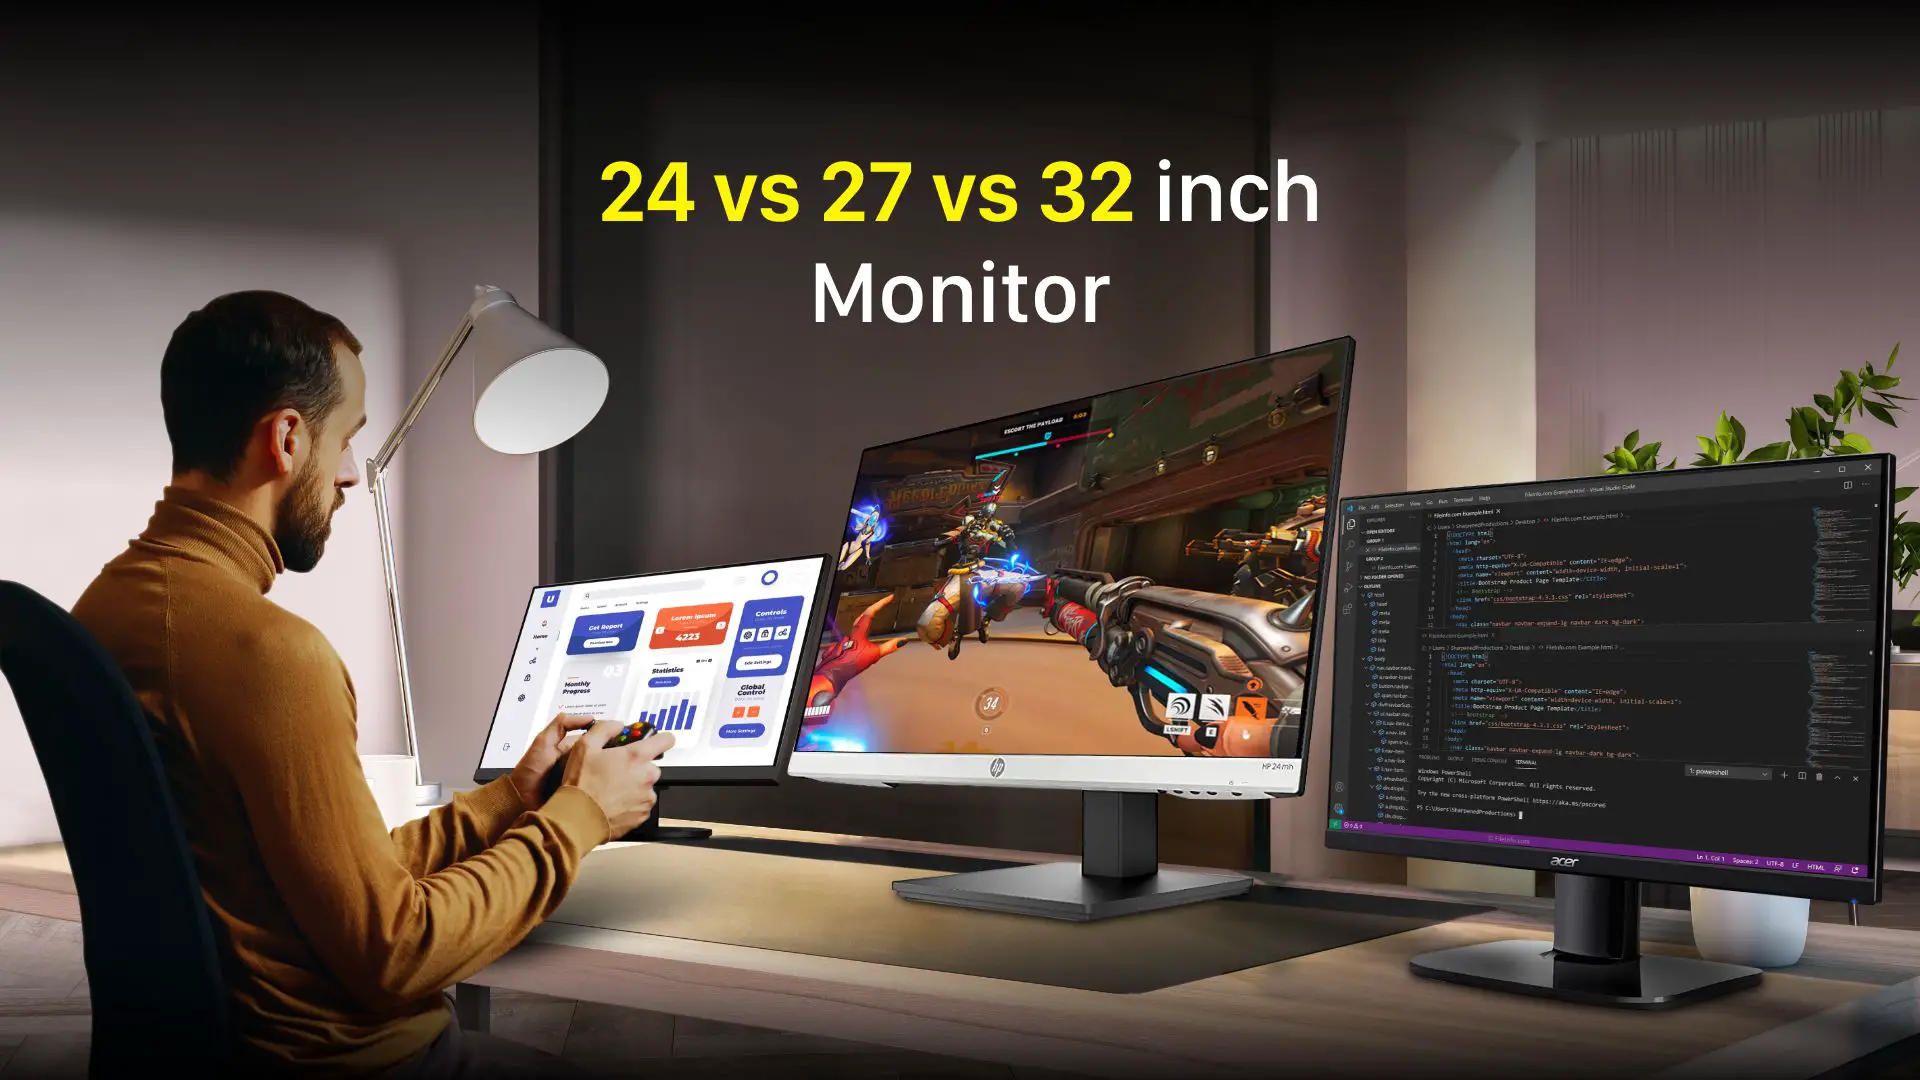 24 Vs 27 Vs 32 inch Monitor - Detailed Comparison